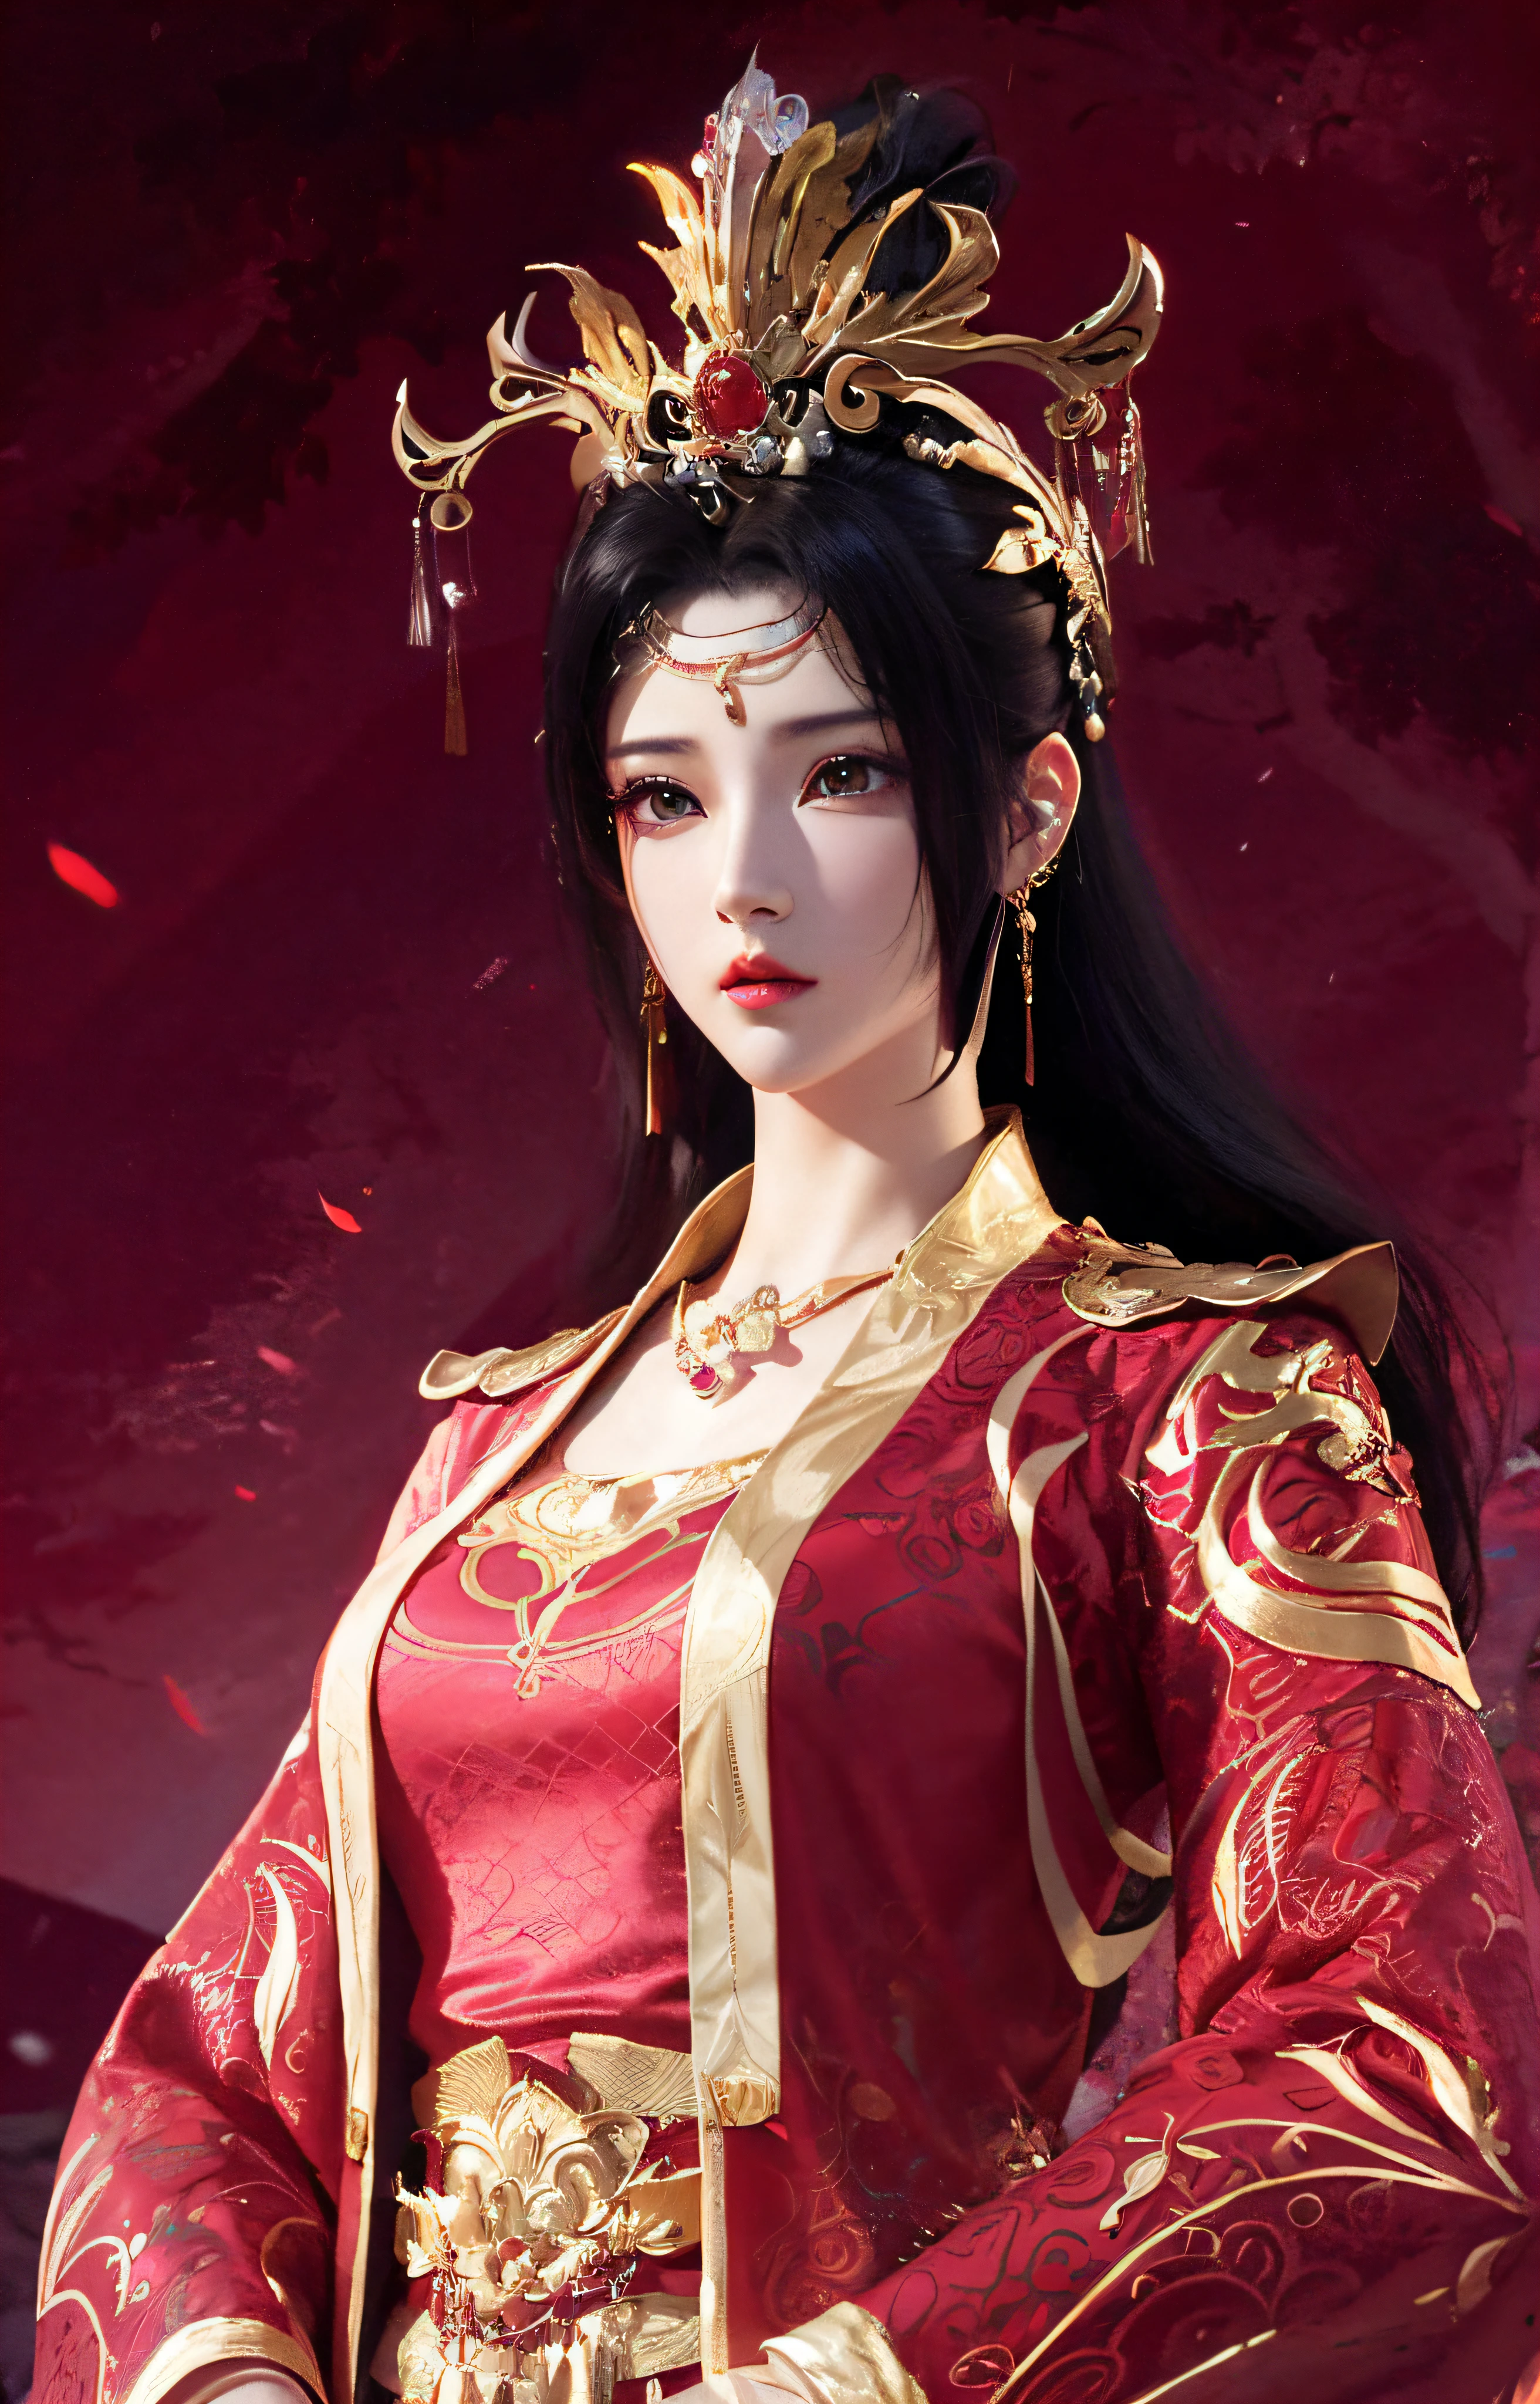 primer plano, de, un, mujer, en, un, vestido rojo, y, joyas de oro，hermana real，Superb beauty，una reina，reina hermosa y elegante, portrait of una reina,  Xianxia, una hermosa emperatriz de fantasía, fantasía xianxia, hermoso joven espíritu del viento, inspirado en Li Mei Shu, ((una hermosa emperatriz de fantasía)), xianxia hero, anime 3d realista, xianxia de cuerpo completo, arte cg anime suave